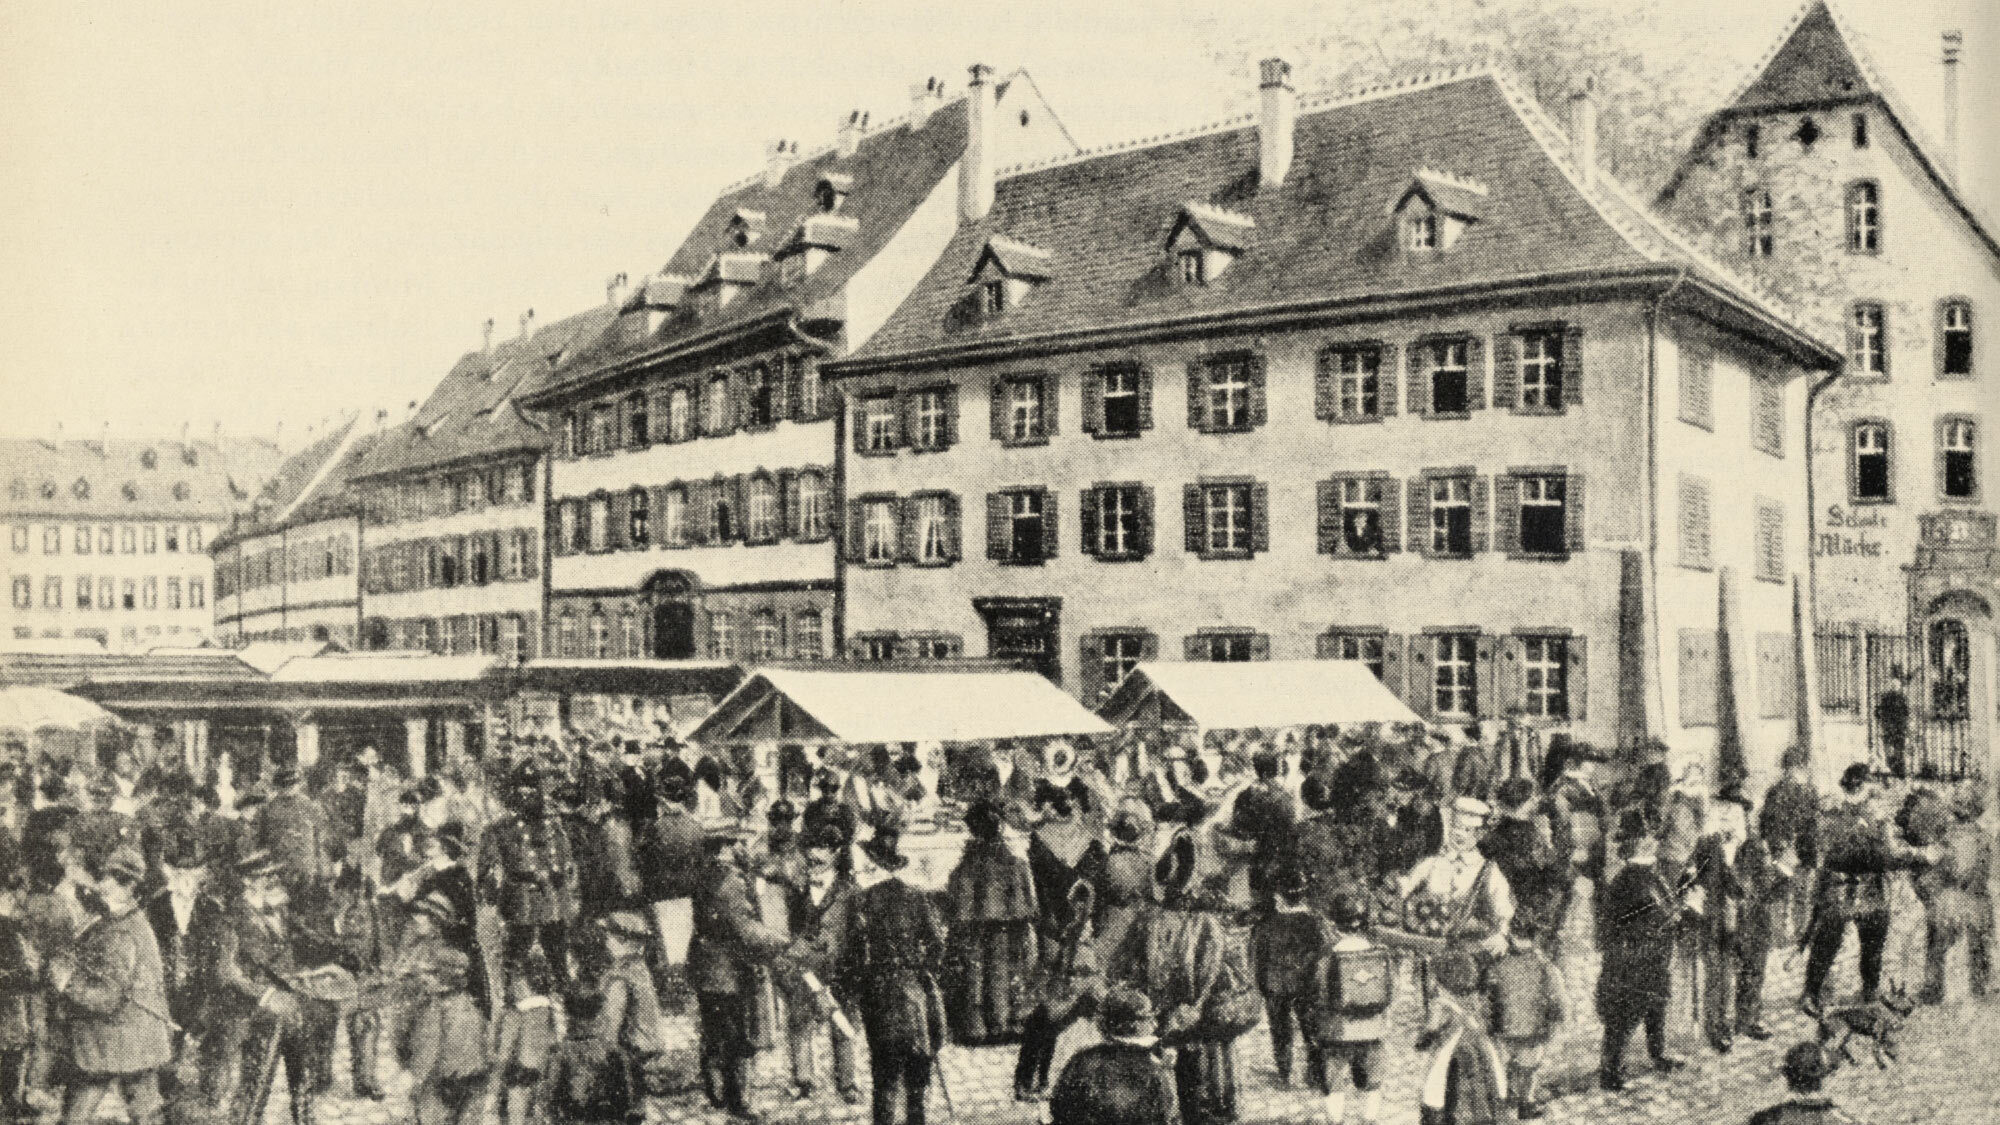 Münsterplatz damals: Die Herbstmesse 1863: Statt Bahnen gab es auf dem Münsterplatz einen Markt. 550 Jahre Basler Herbstmesse, Spalentor Verlag.